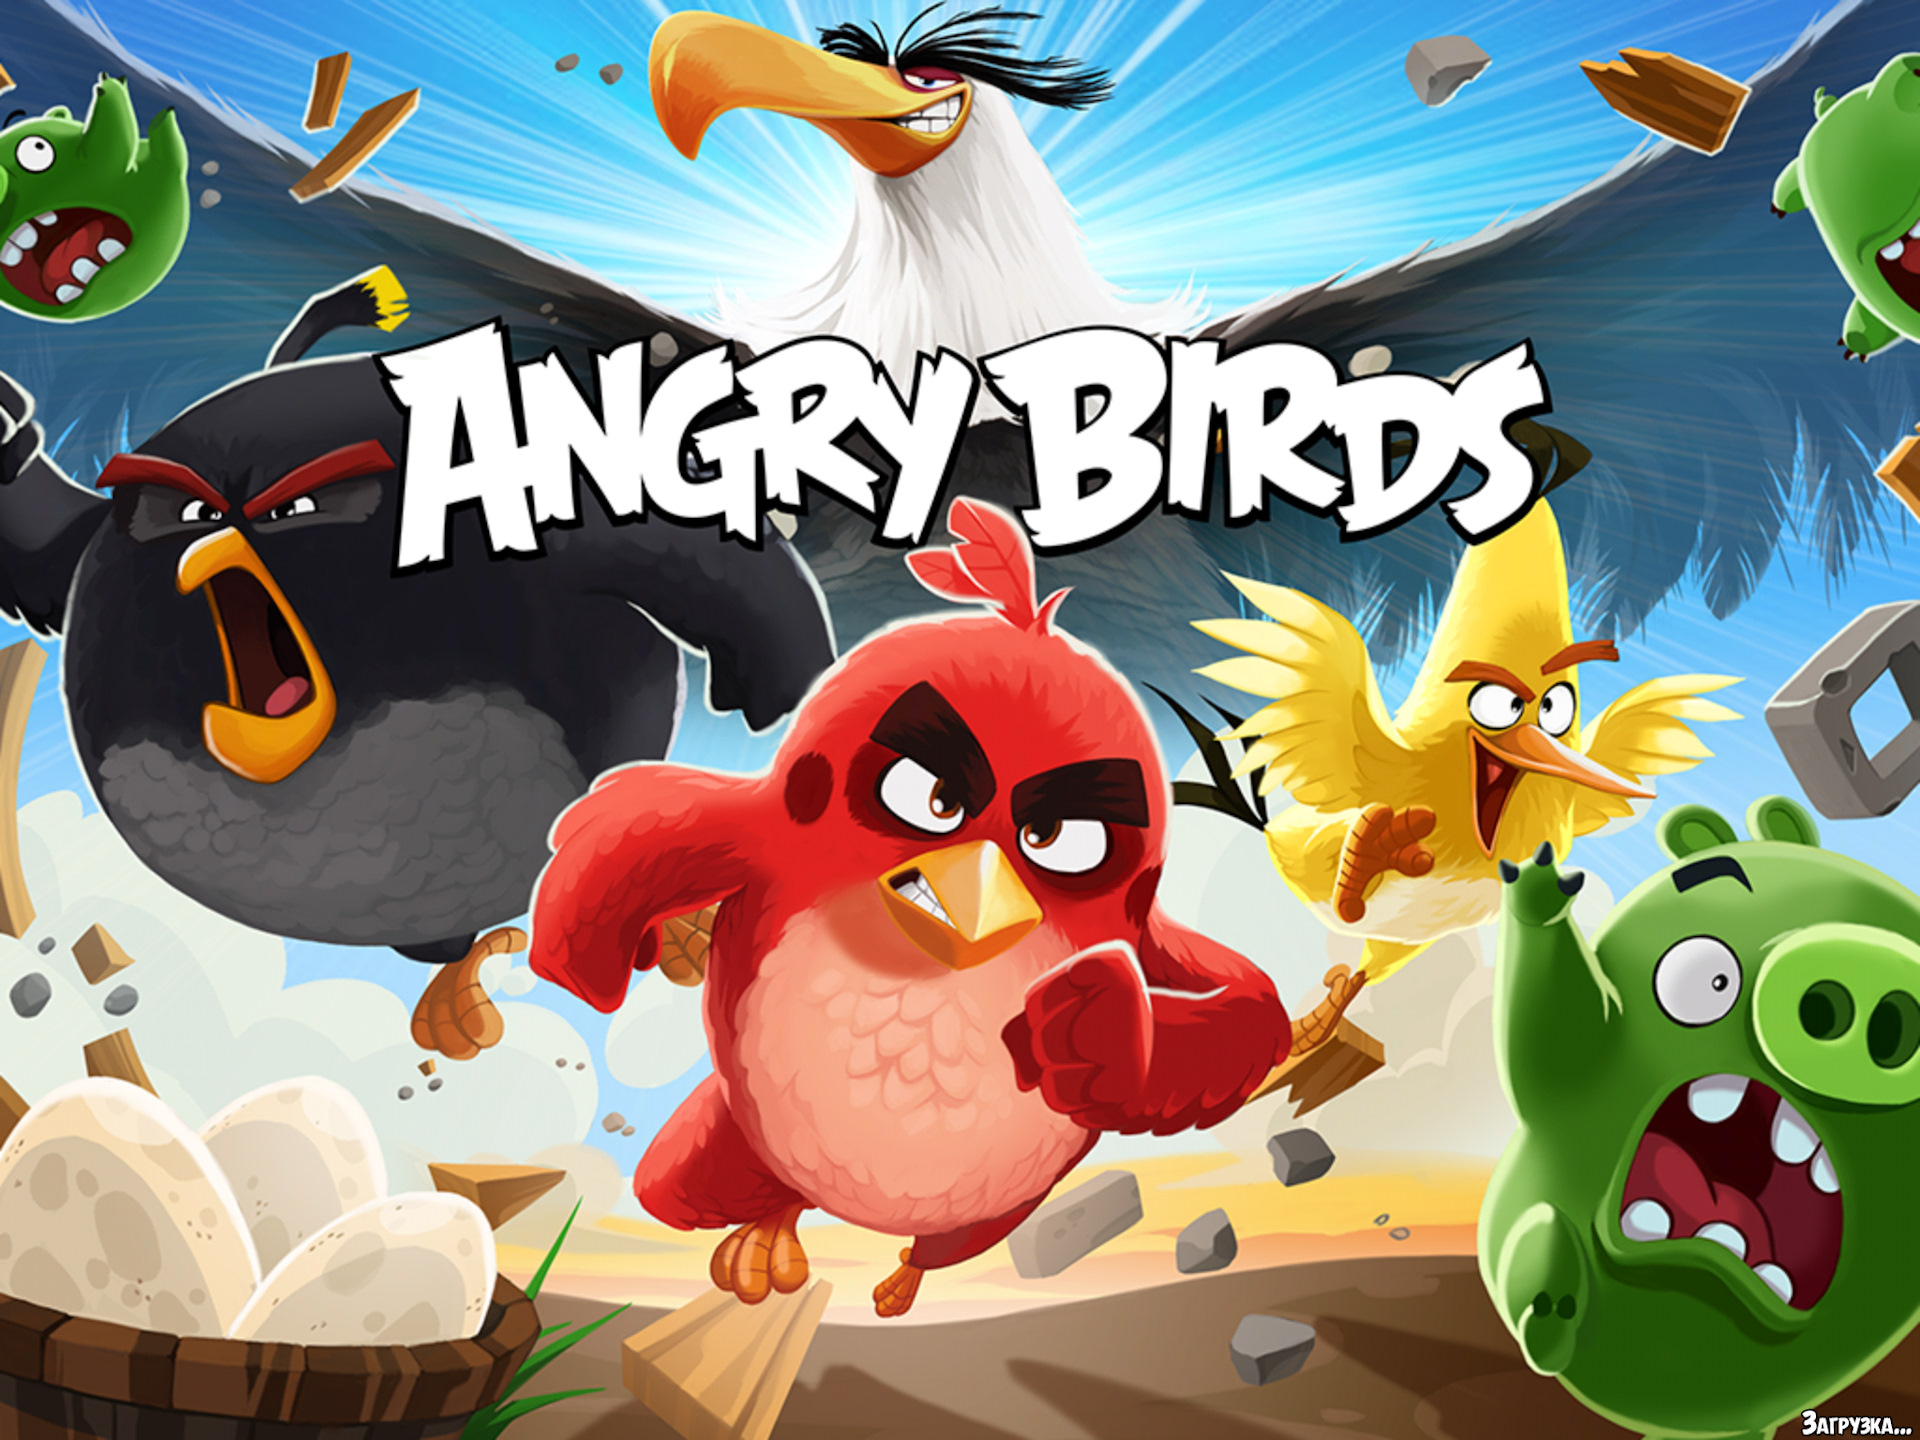 Angry birds mod. Angry Birds загрузочный экран. Игры Энгри бердз в плей Маркете. Загрузачный экран Энгри берс го. Angry Birds Piggy Farm.